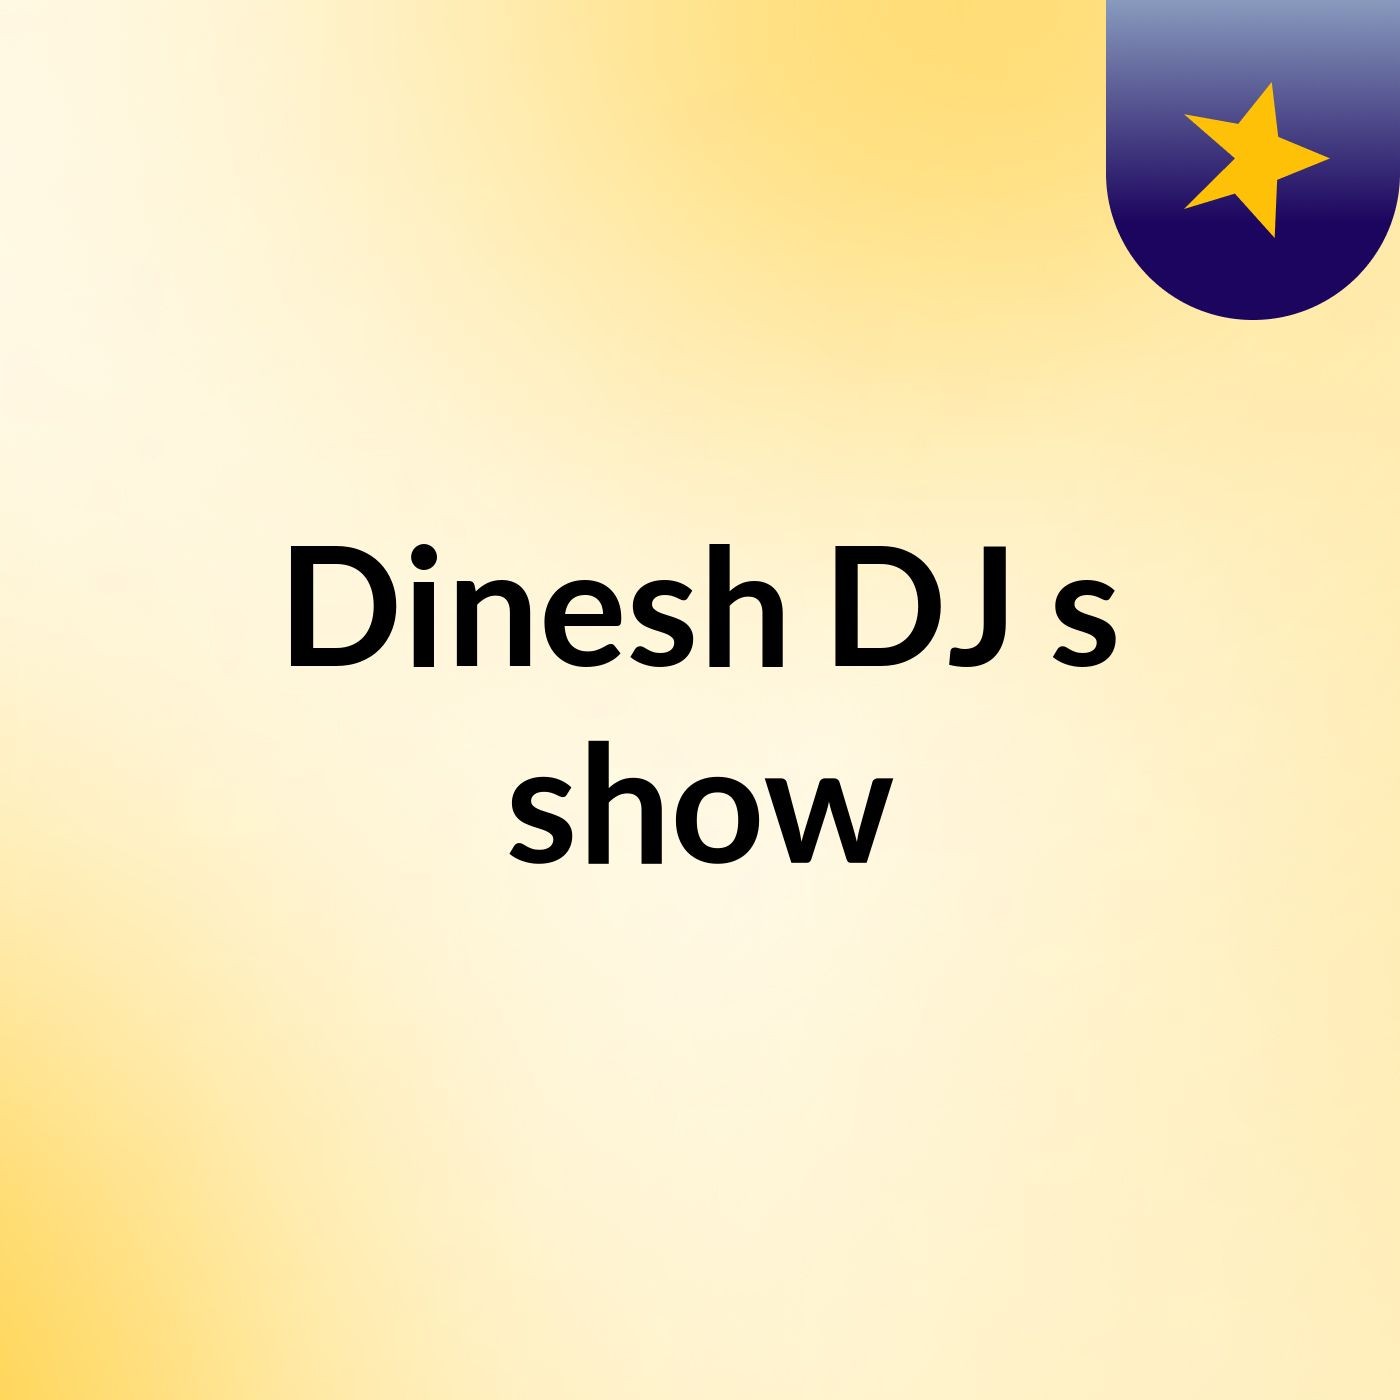 Dinesh DJ's show